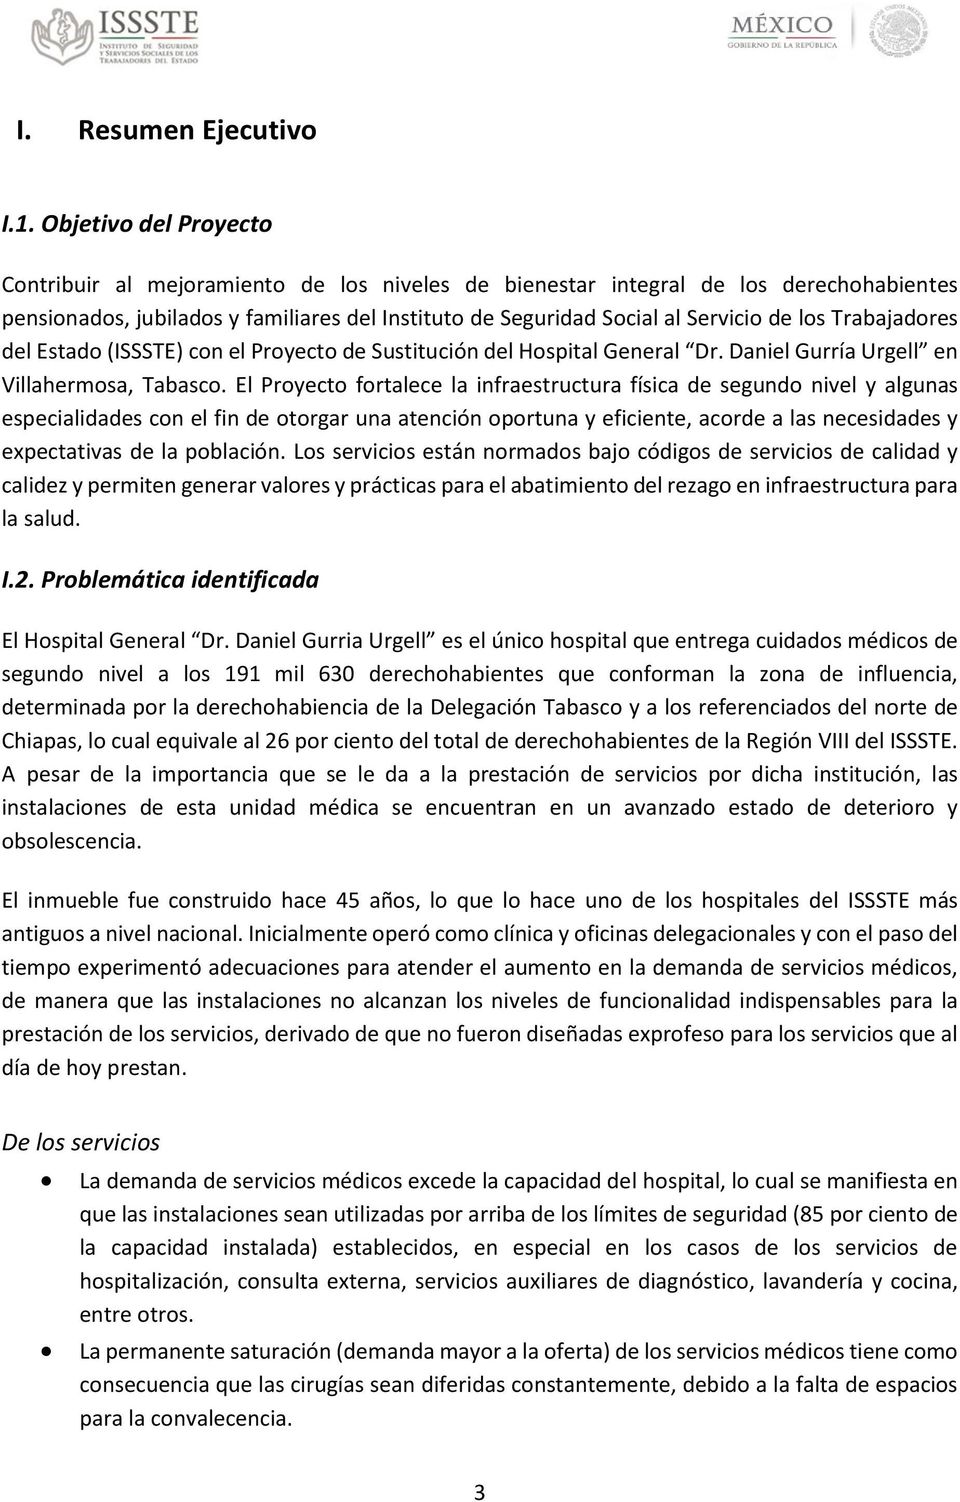 Trabajadores del Estado (ISSSTE) con el Proyecto de Sustitución del Hospital General Dr. Daniel Gurría Urgell en Villahermosa, Tabasco.